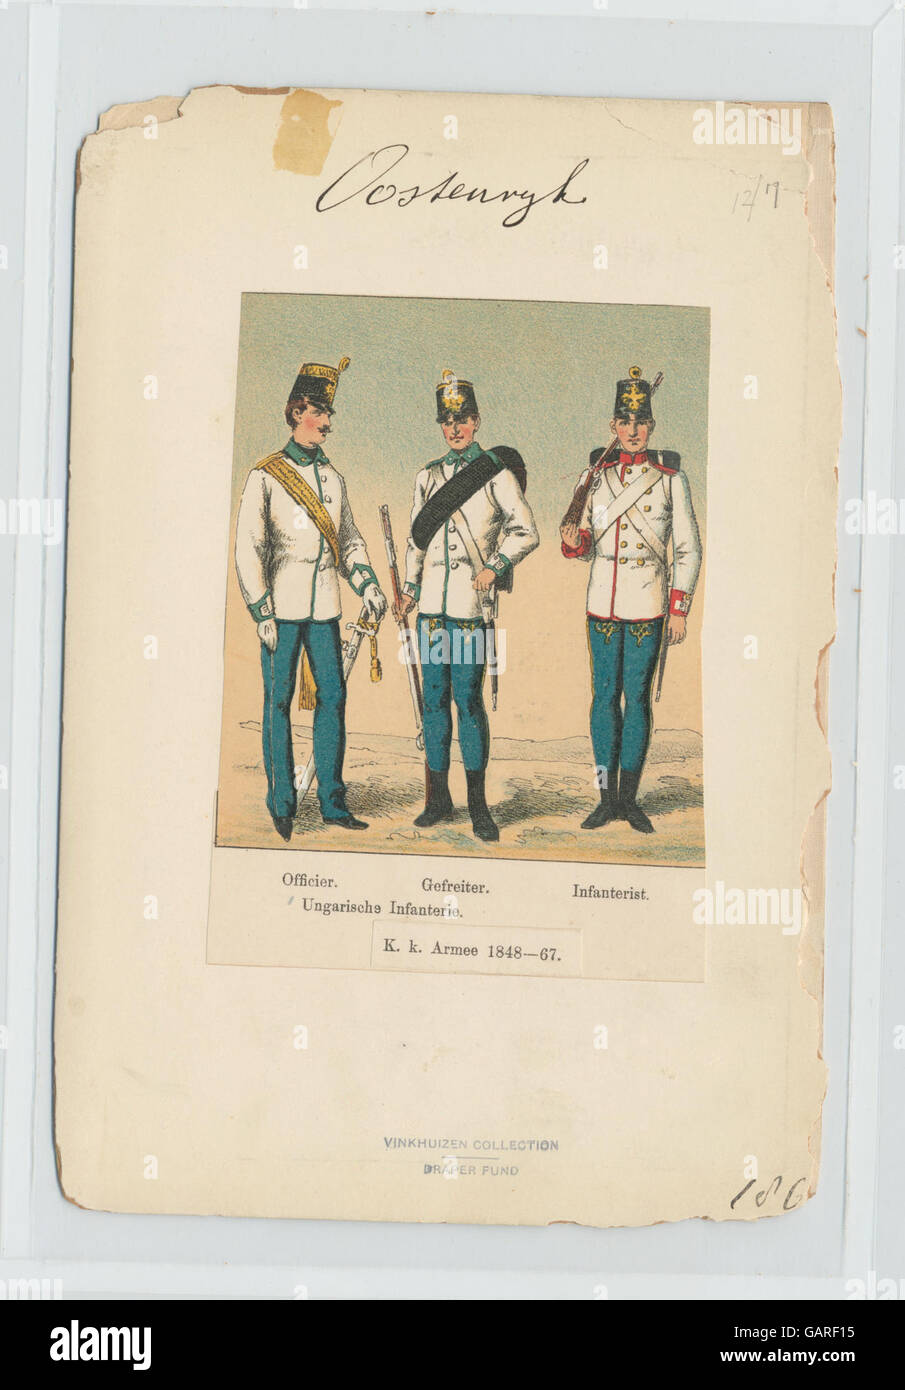 Ungarische Infanterie- Officier, Gefreiter, Infanterist. K.k. Armee 1848-67 ( b14896507-90440) Stock Photo